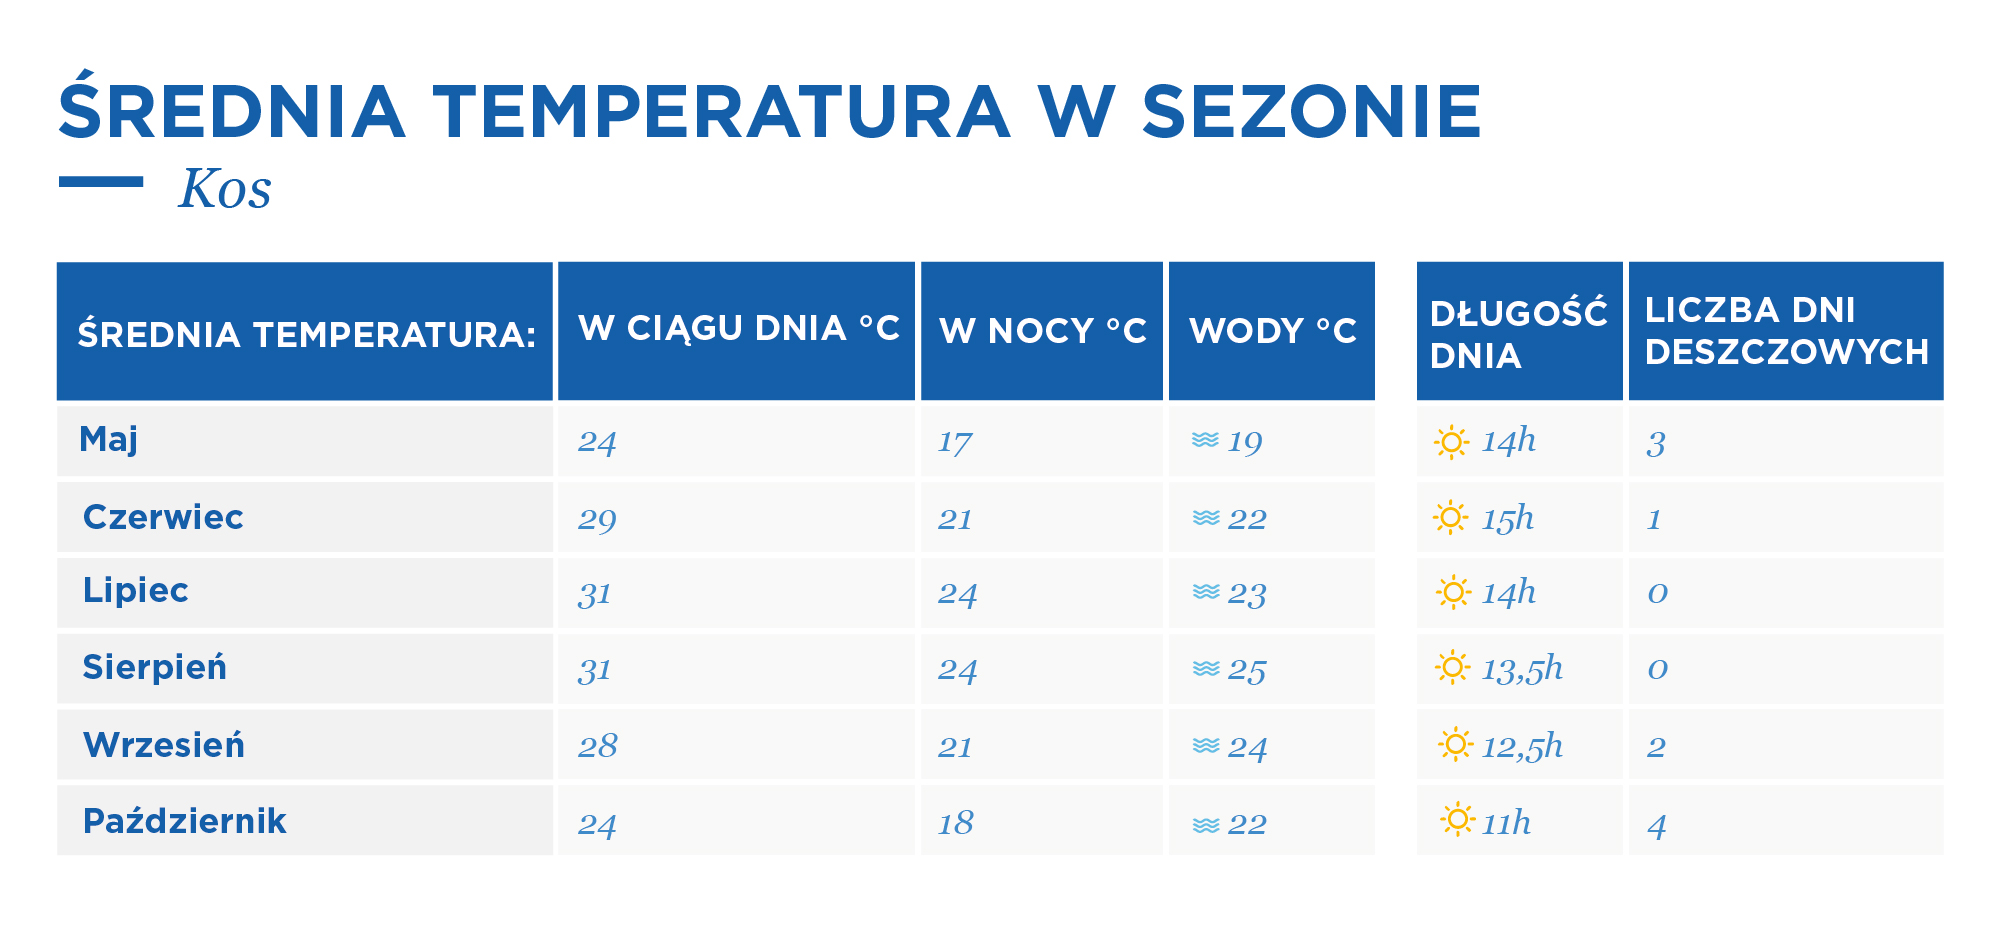 Tabela przedstawia średnie temperatury w układzie miesięcznym na Kos